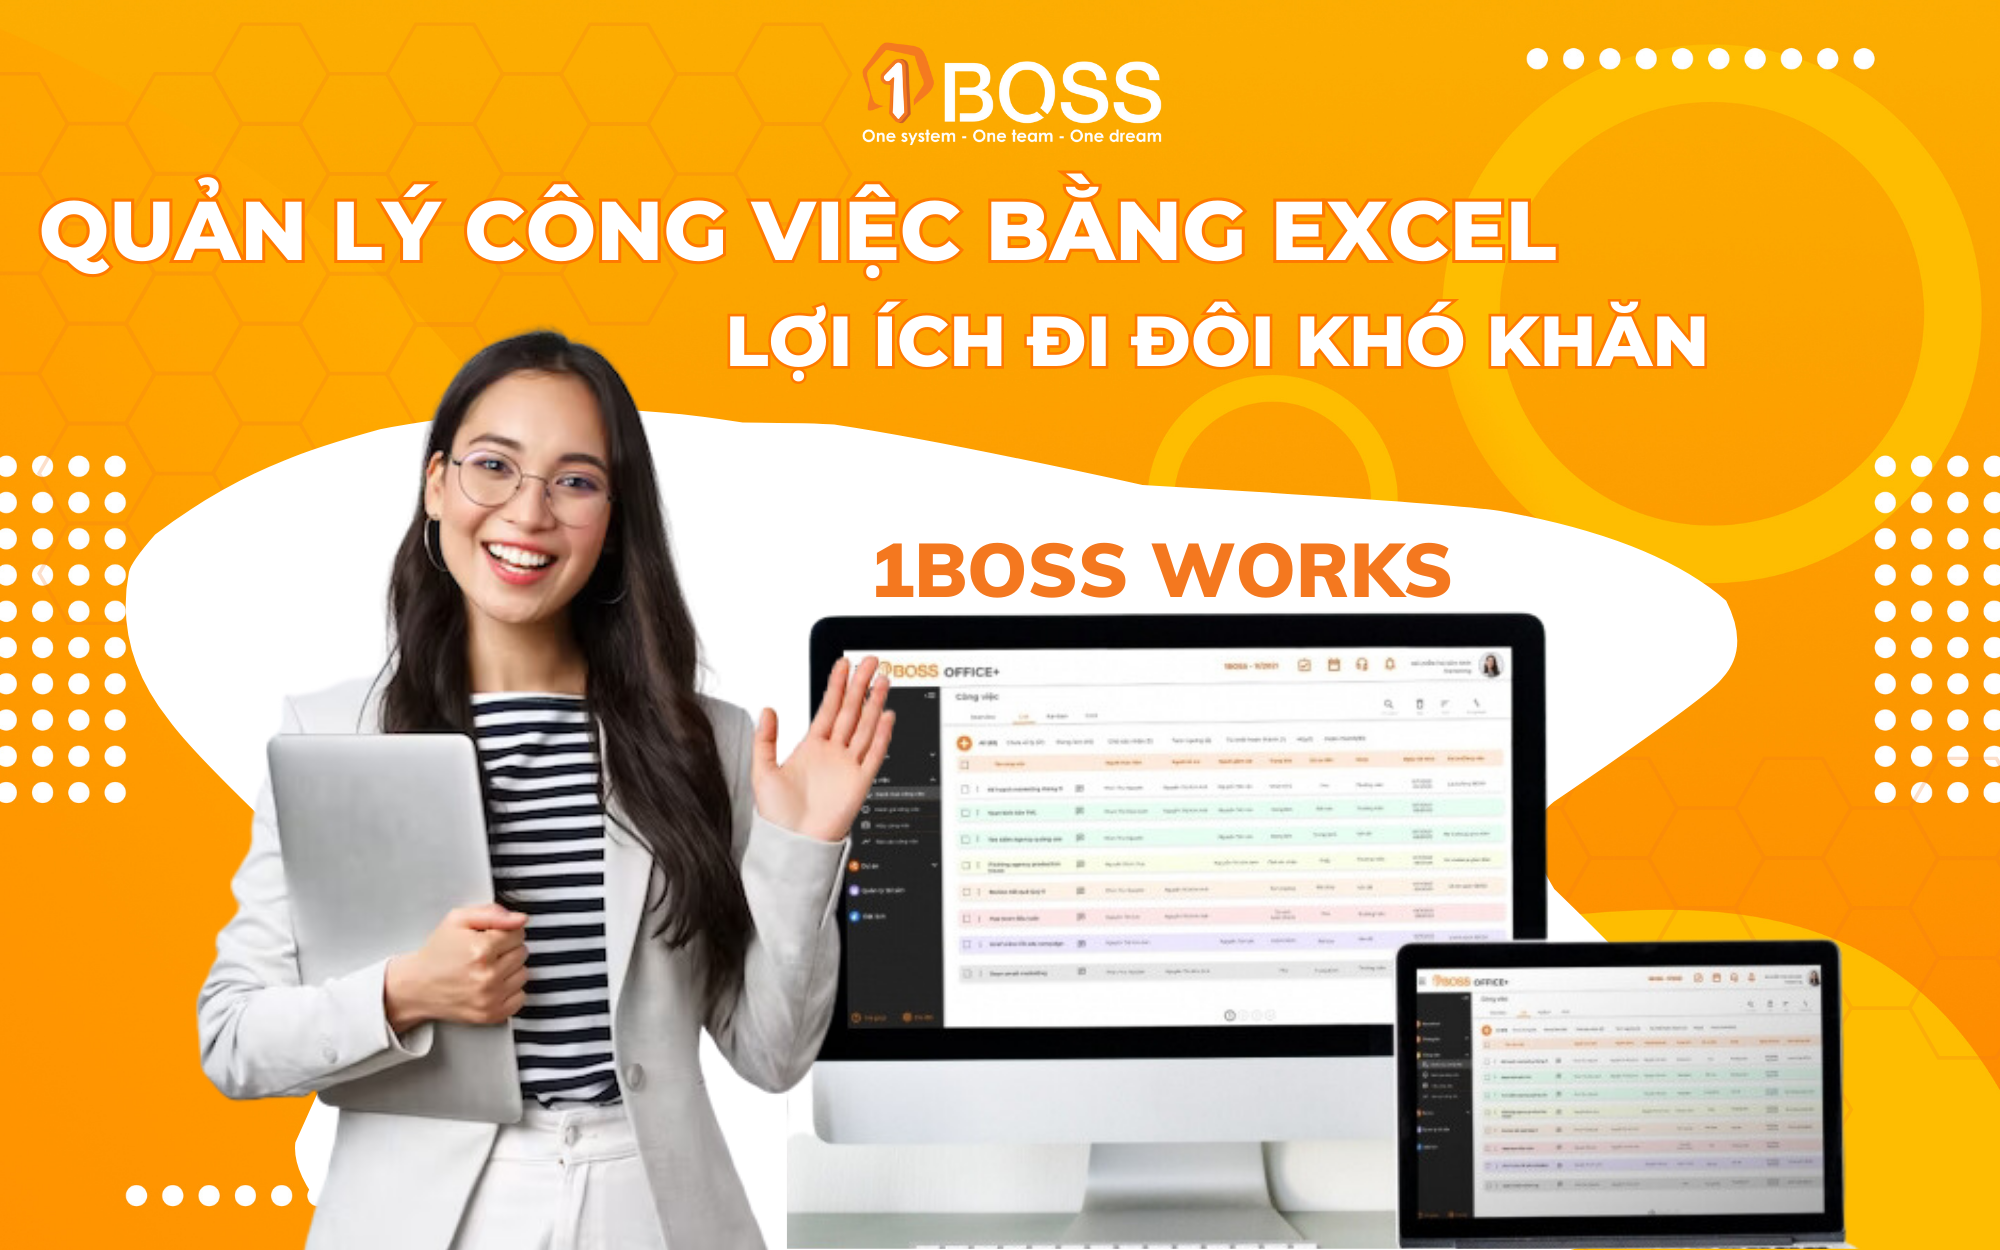 Quản lý công việc bằng Excel: Lợi ích đi đôi với khó khăn